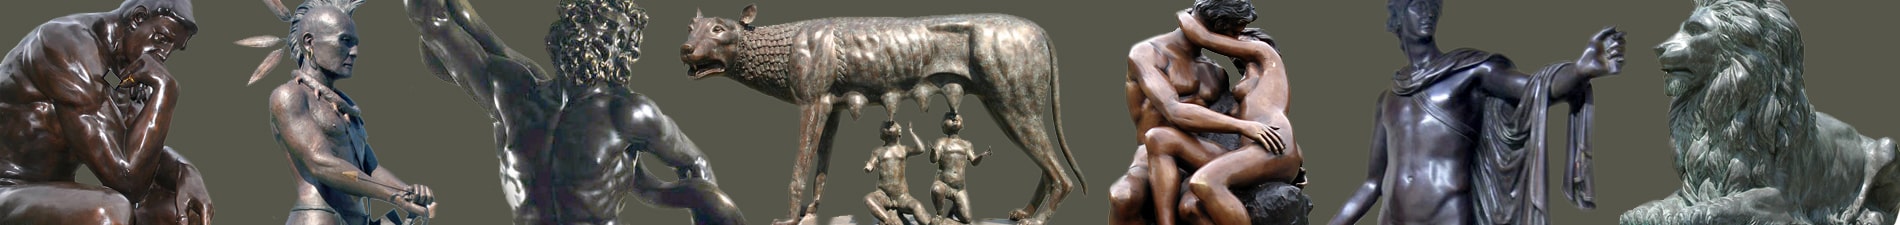 Christian bronze sculptures